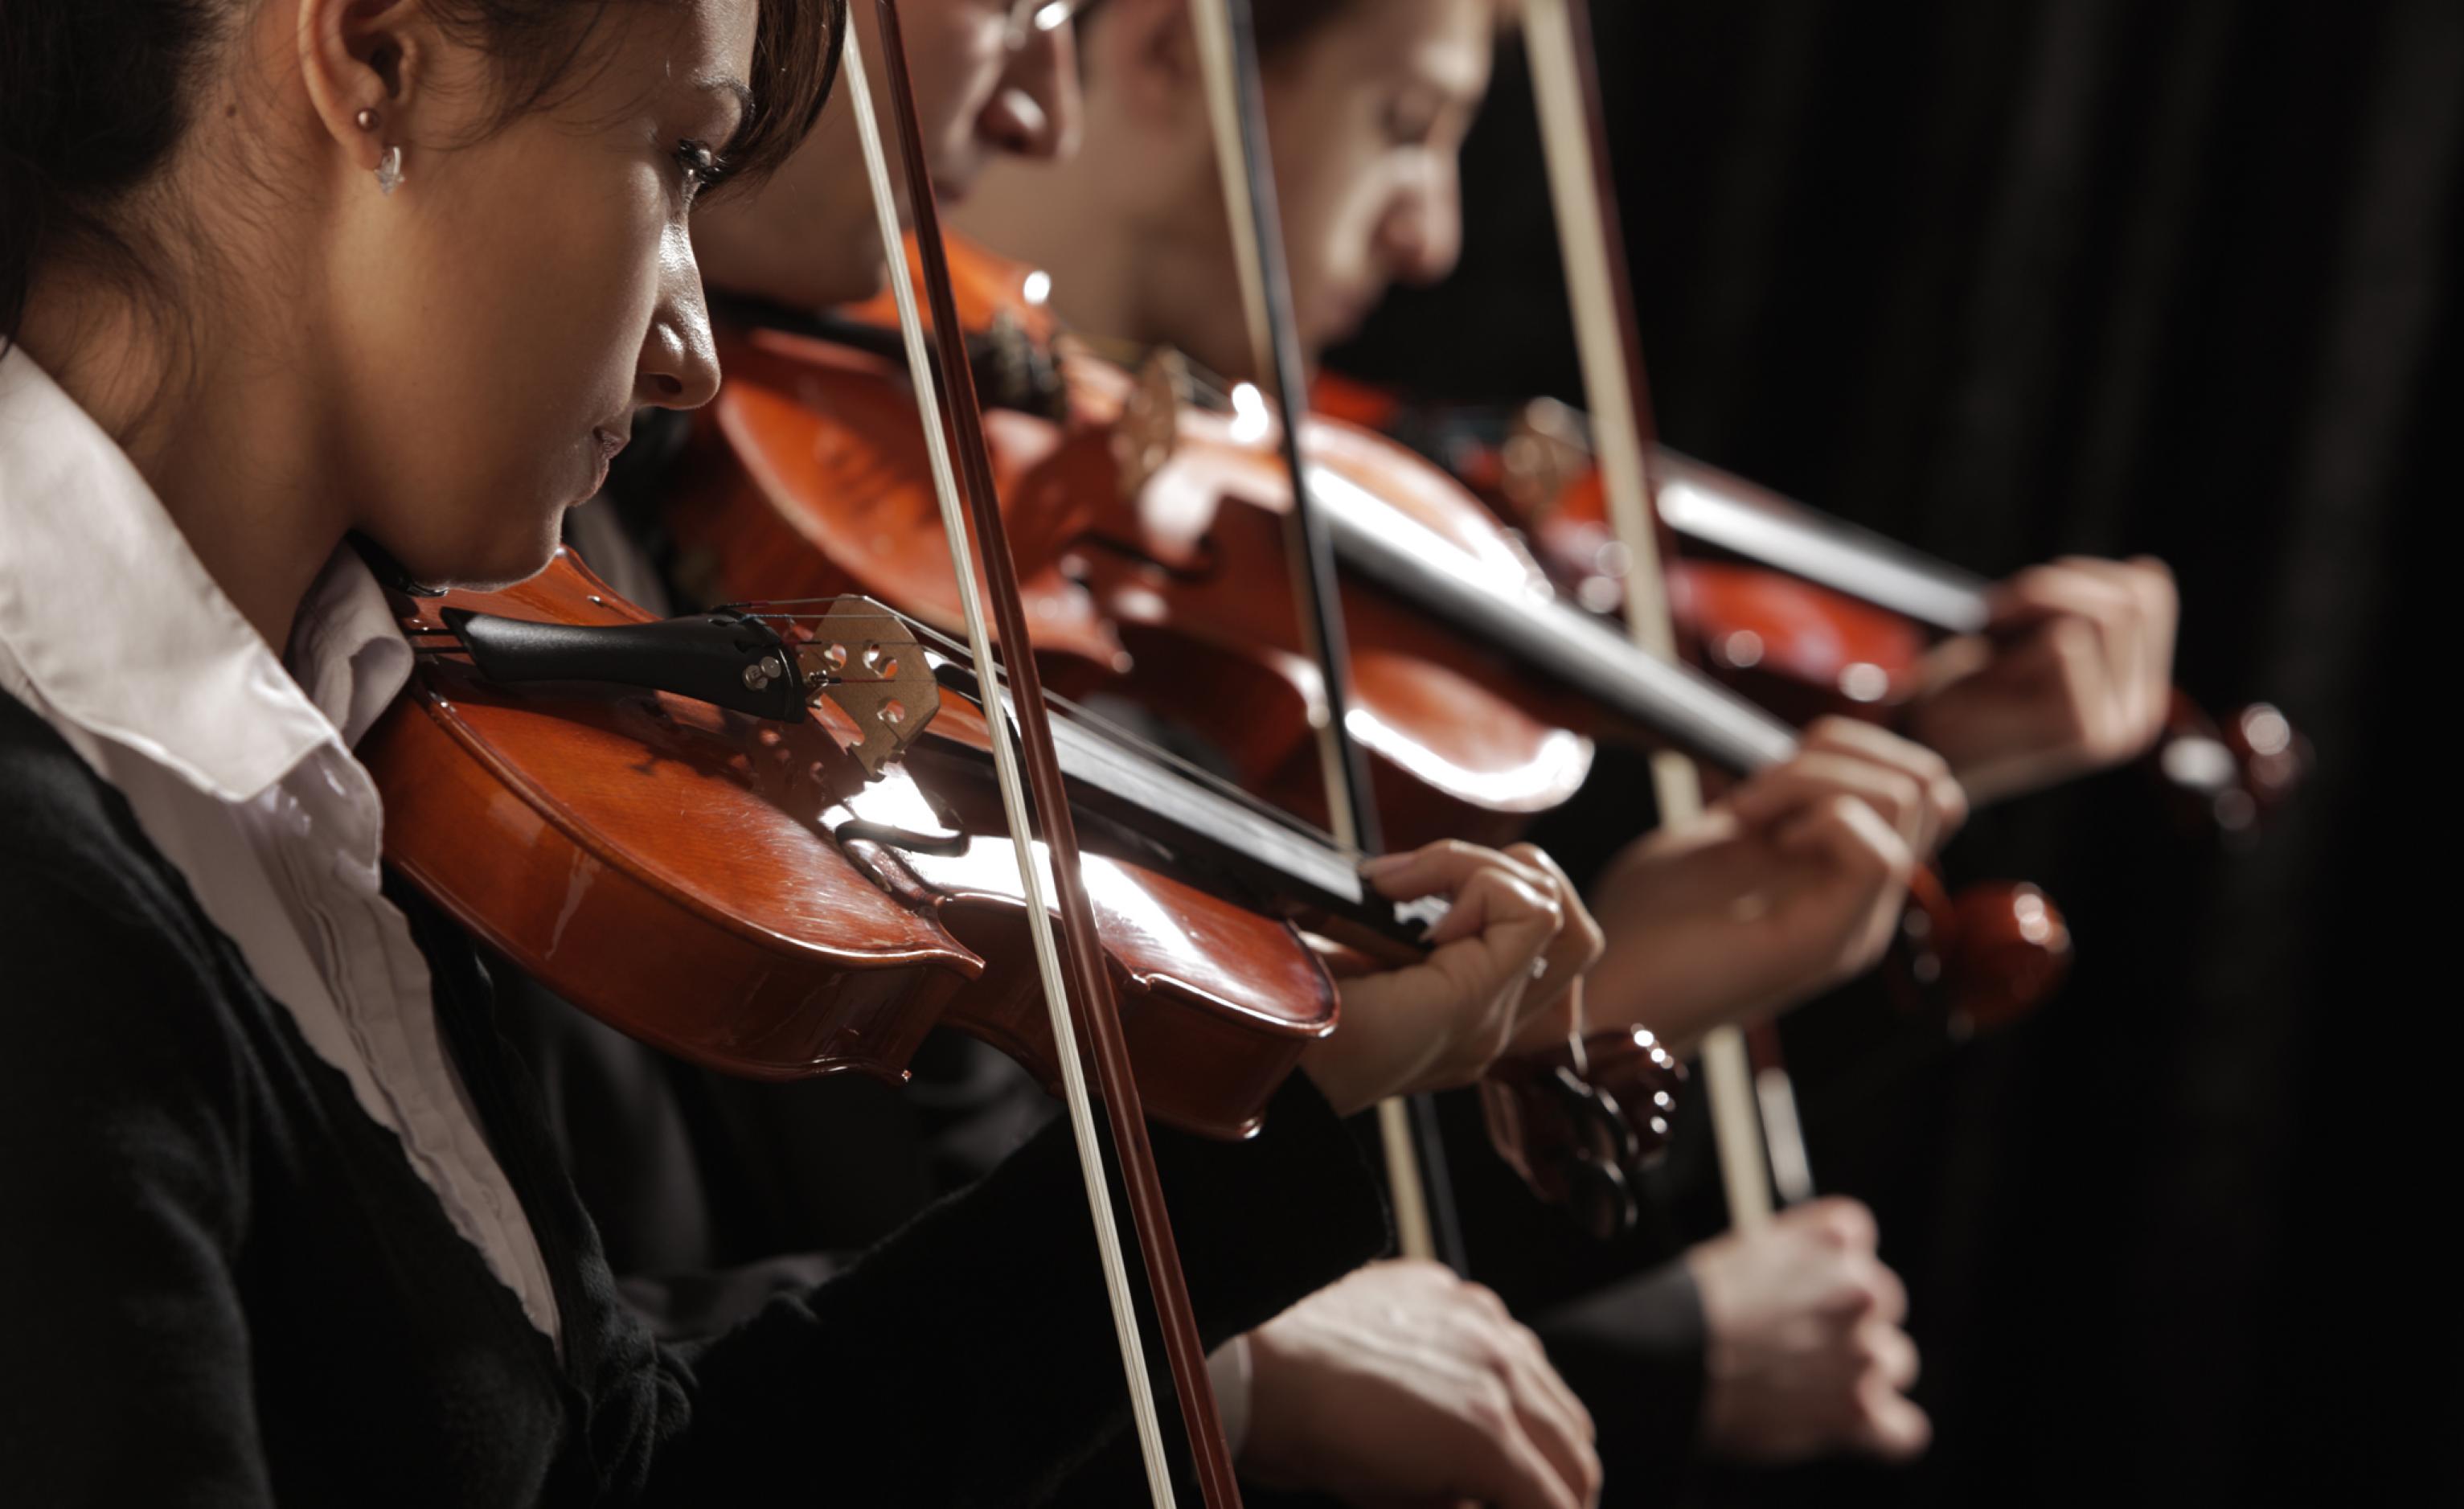 Das Foto zeigt vor schwarzem Hintergrund drei Geigende eines Orchesters. Sie sind elegant gekleidet und von der Seite fotografiert. Kopf, Oberkörper, der rechte Arm mit dem Geigenbogen und die Geigen selbst sind groß zu sehen.